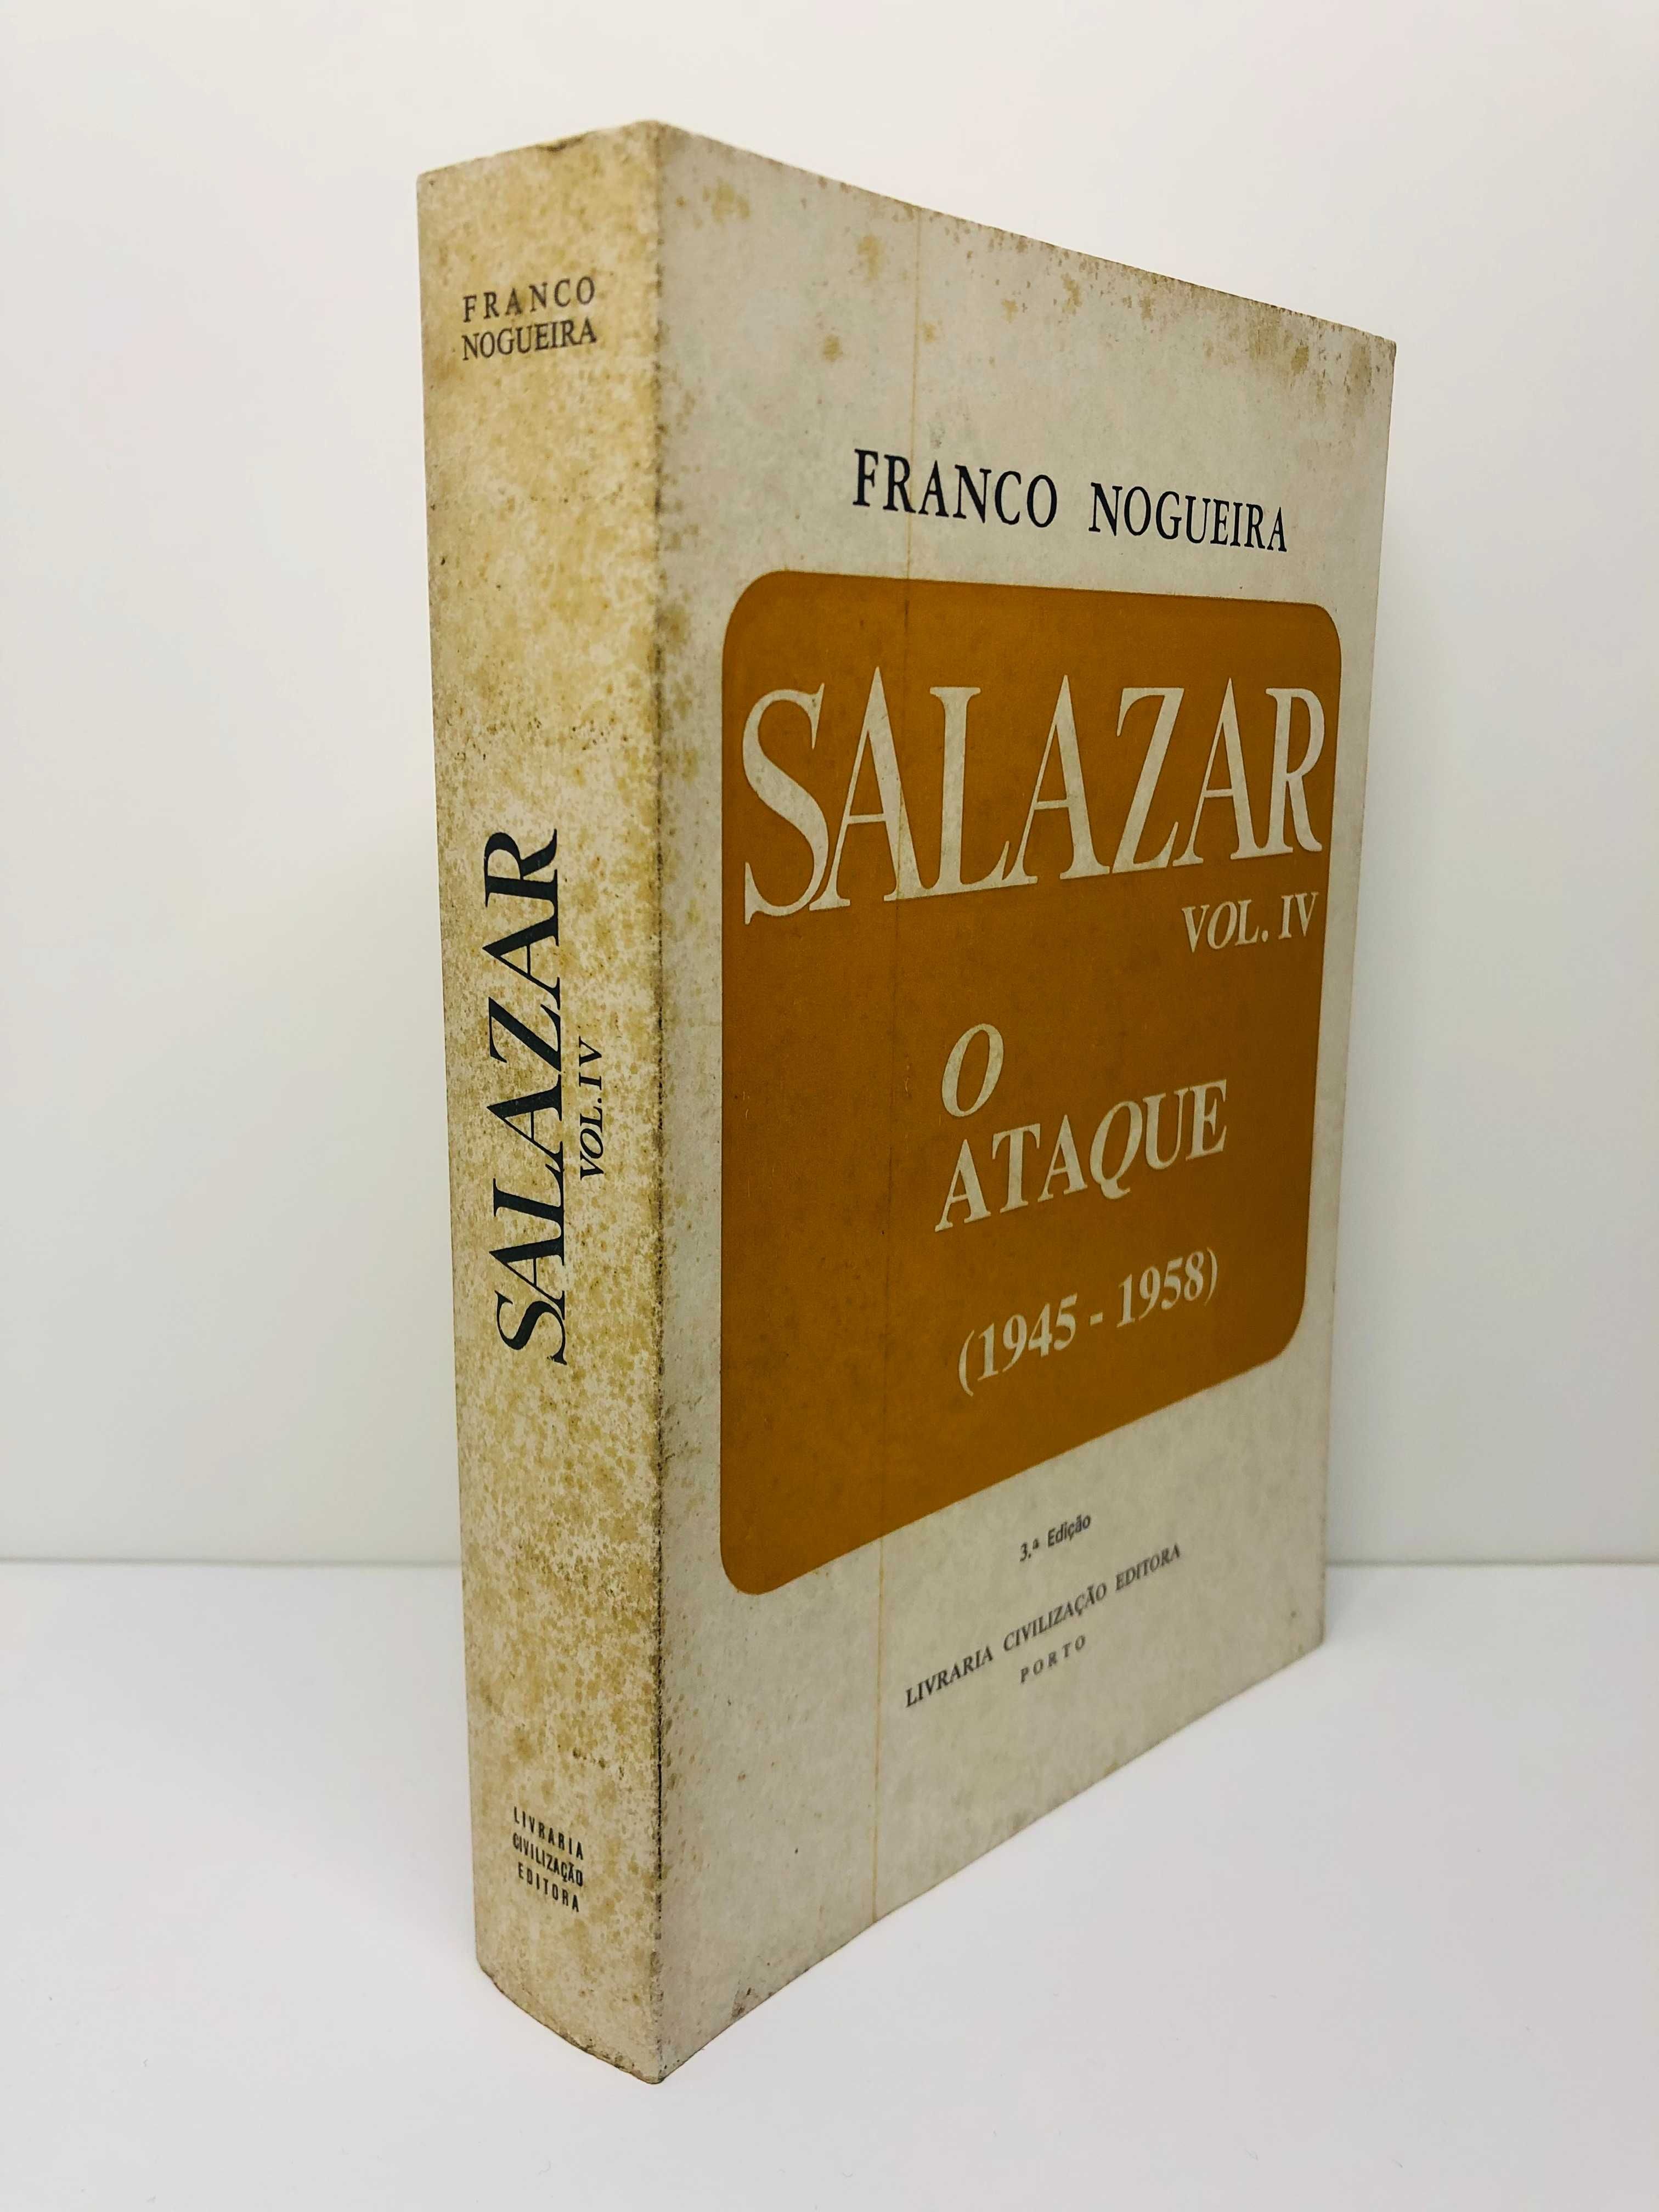 Salazar - Volume IV O Ataque (1945 a 1958) (4ª Edição) Franco Nogueira